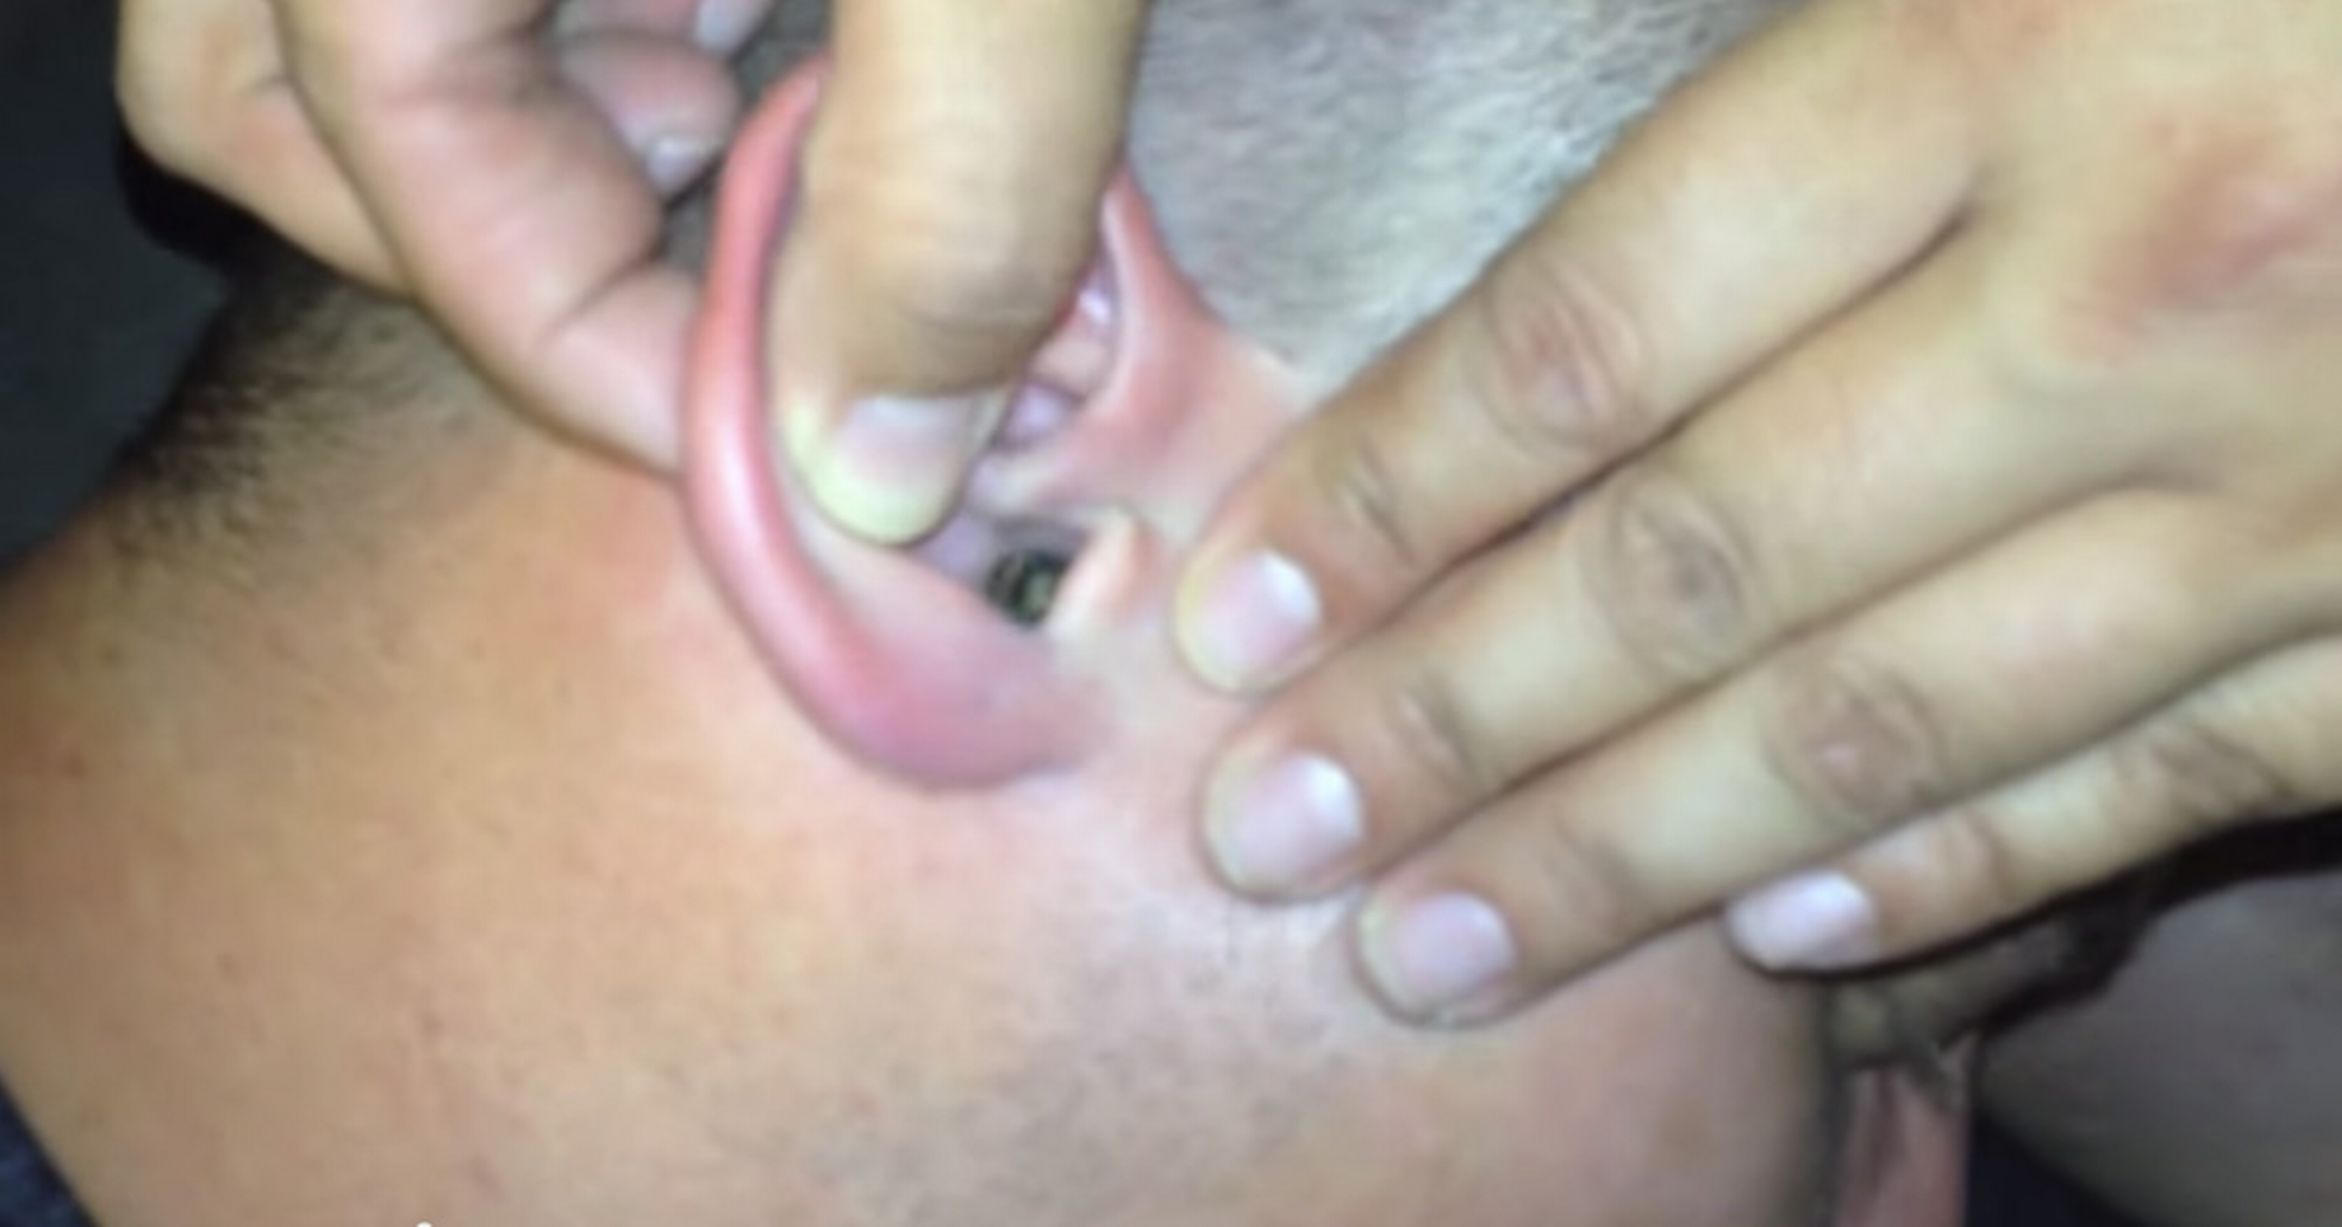 Élő molylepkét szedtek ki a füléből – +18 fotók és videó